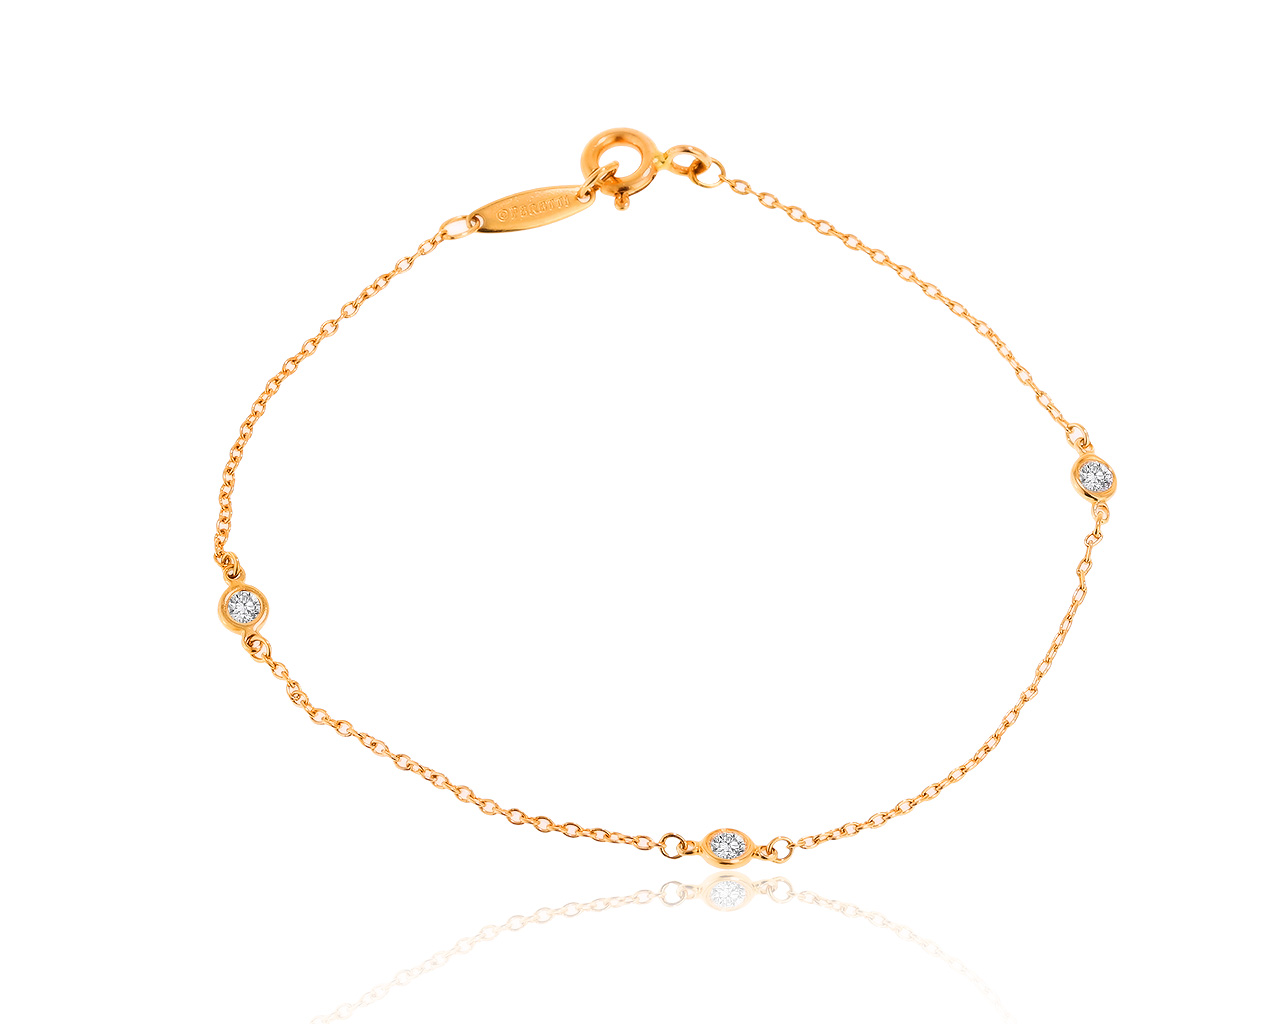 Оригинальный золотой браслет с бриллиантами 0.15ct Tiffany&Co Elsa Peretti 241220/7